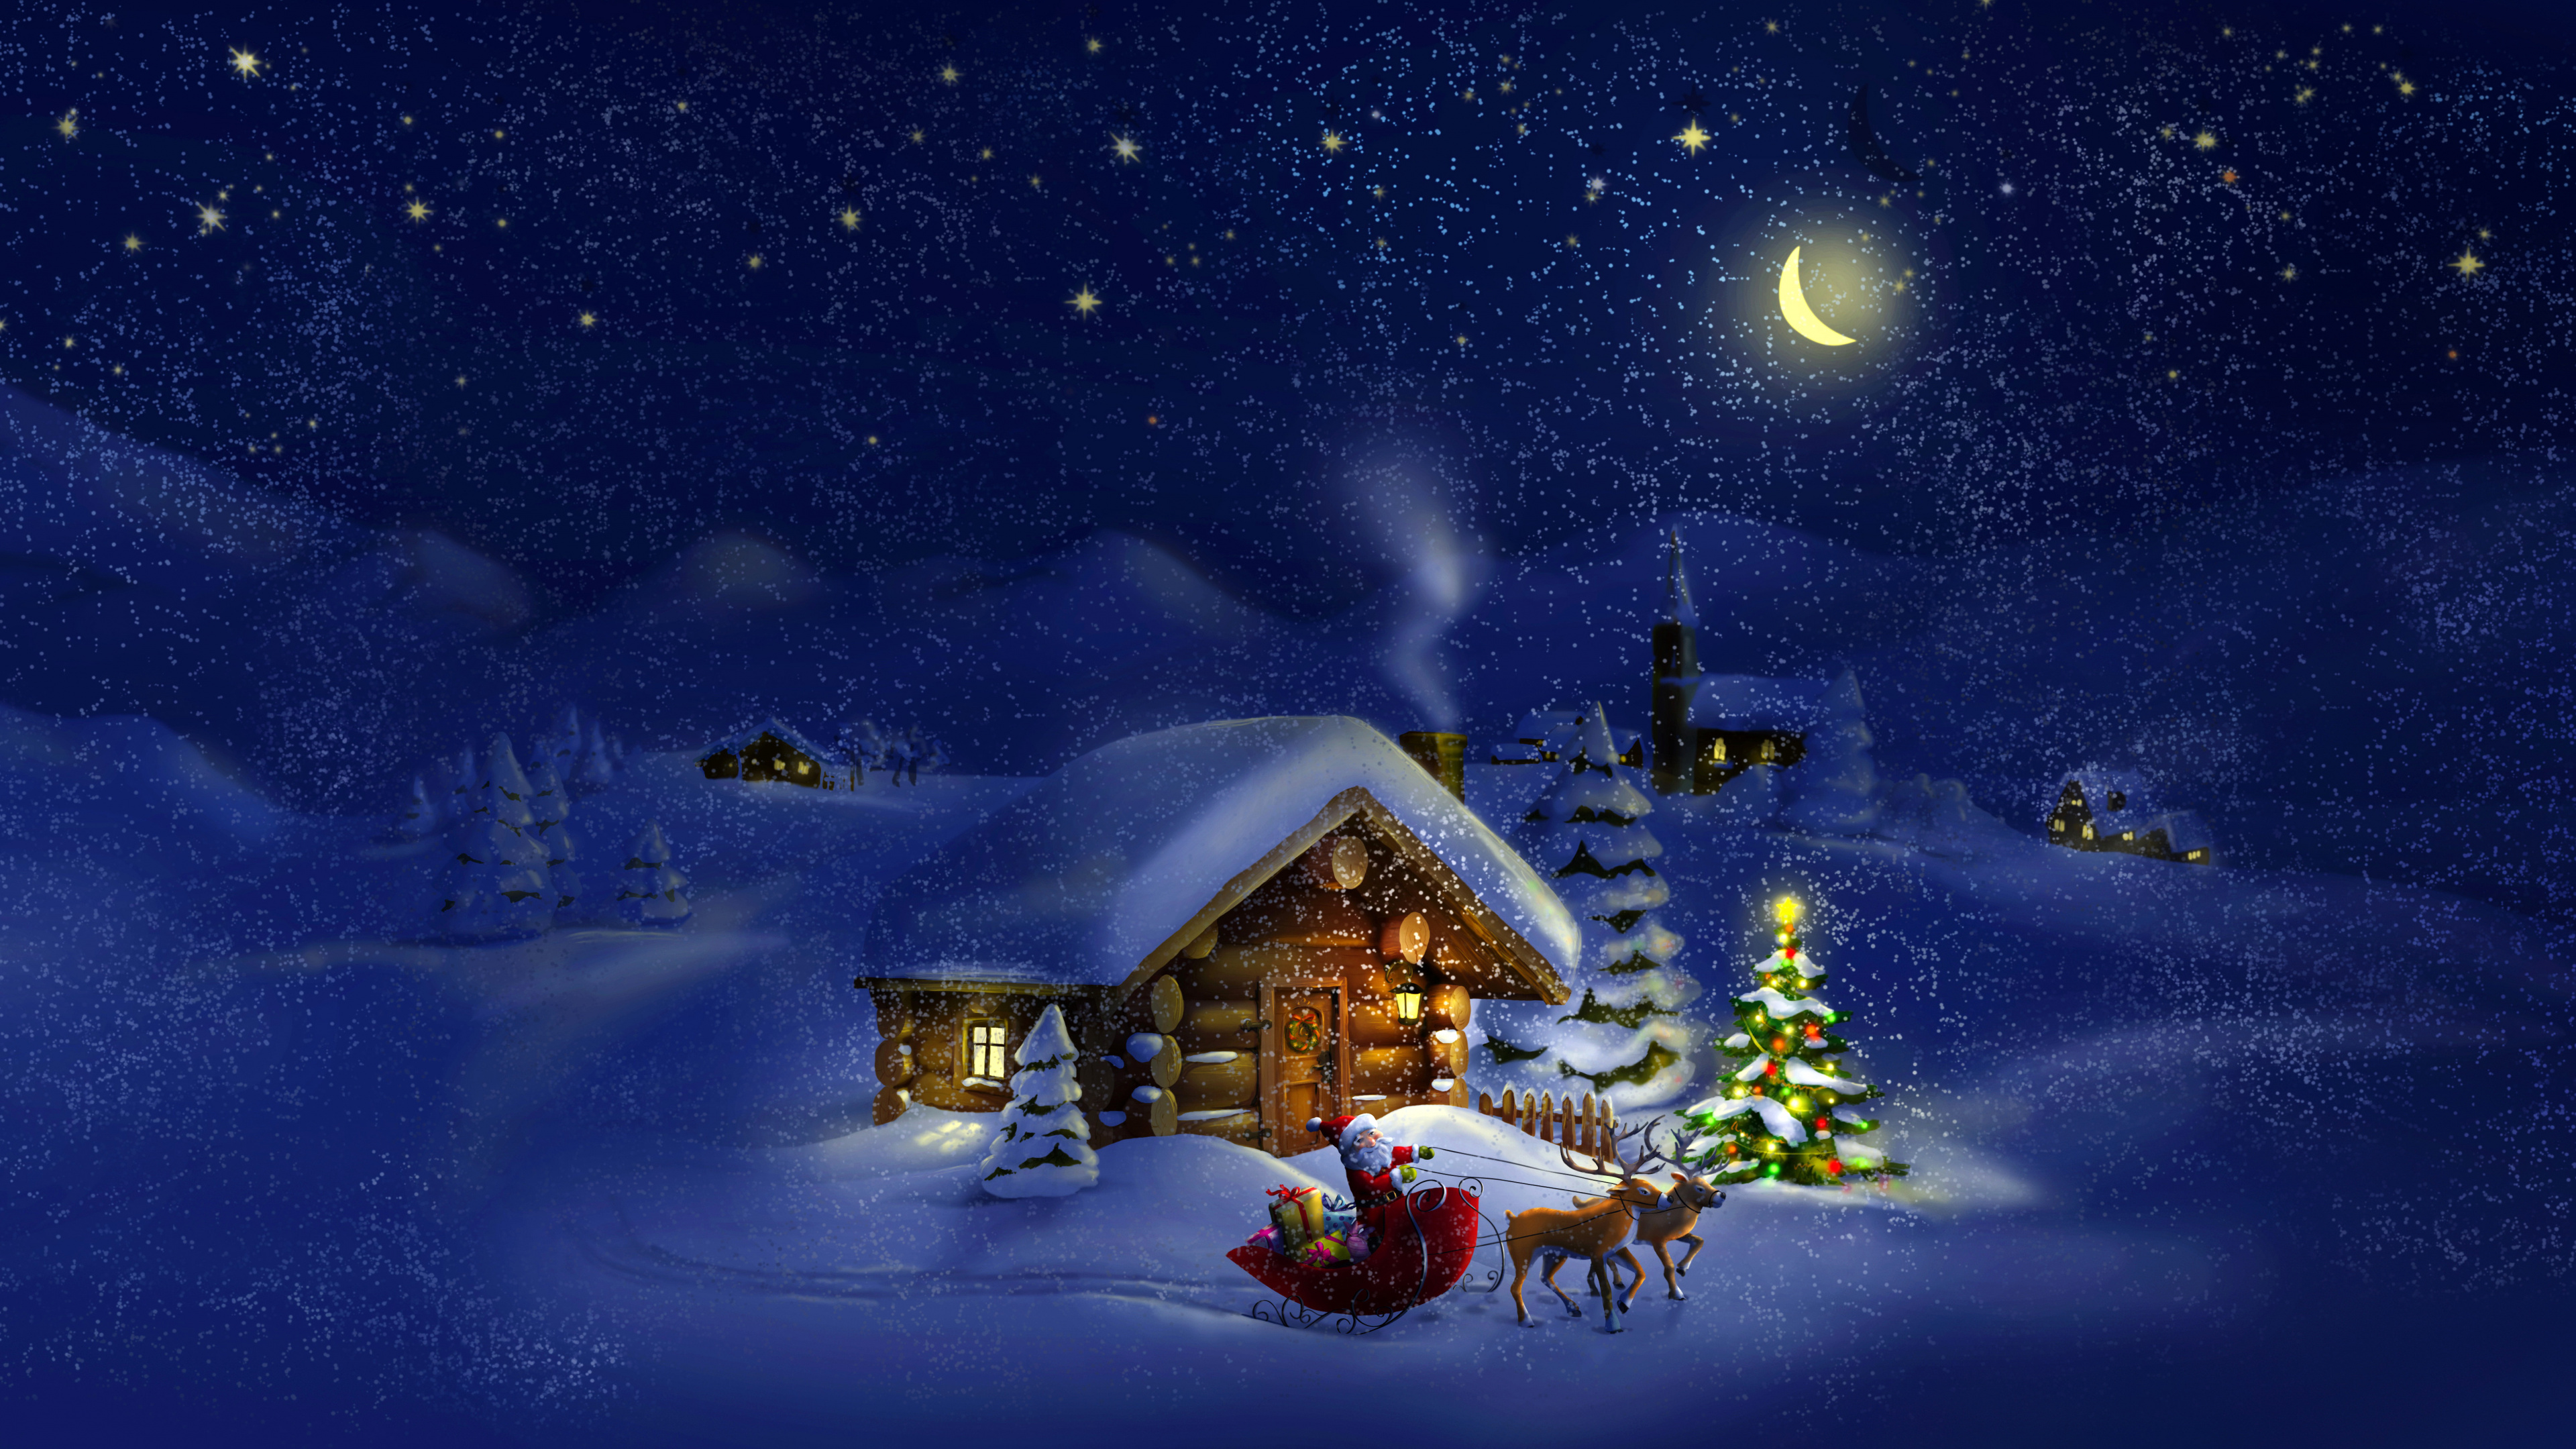 El Día De Navidad, Santa Claus, Invierno, Nieve, Navidad. Wallpaper in 3840x2160 Resolution